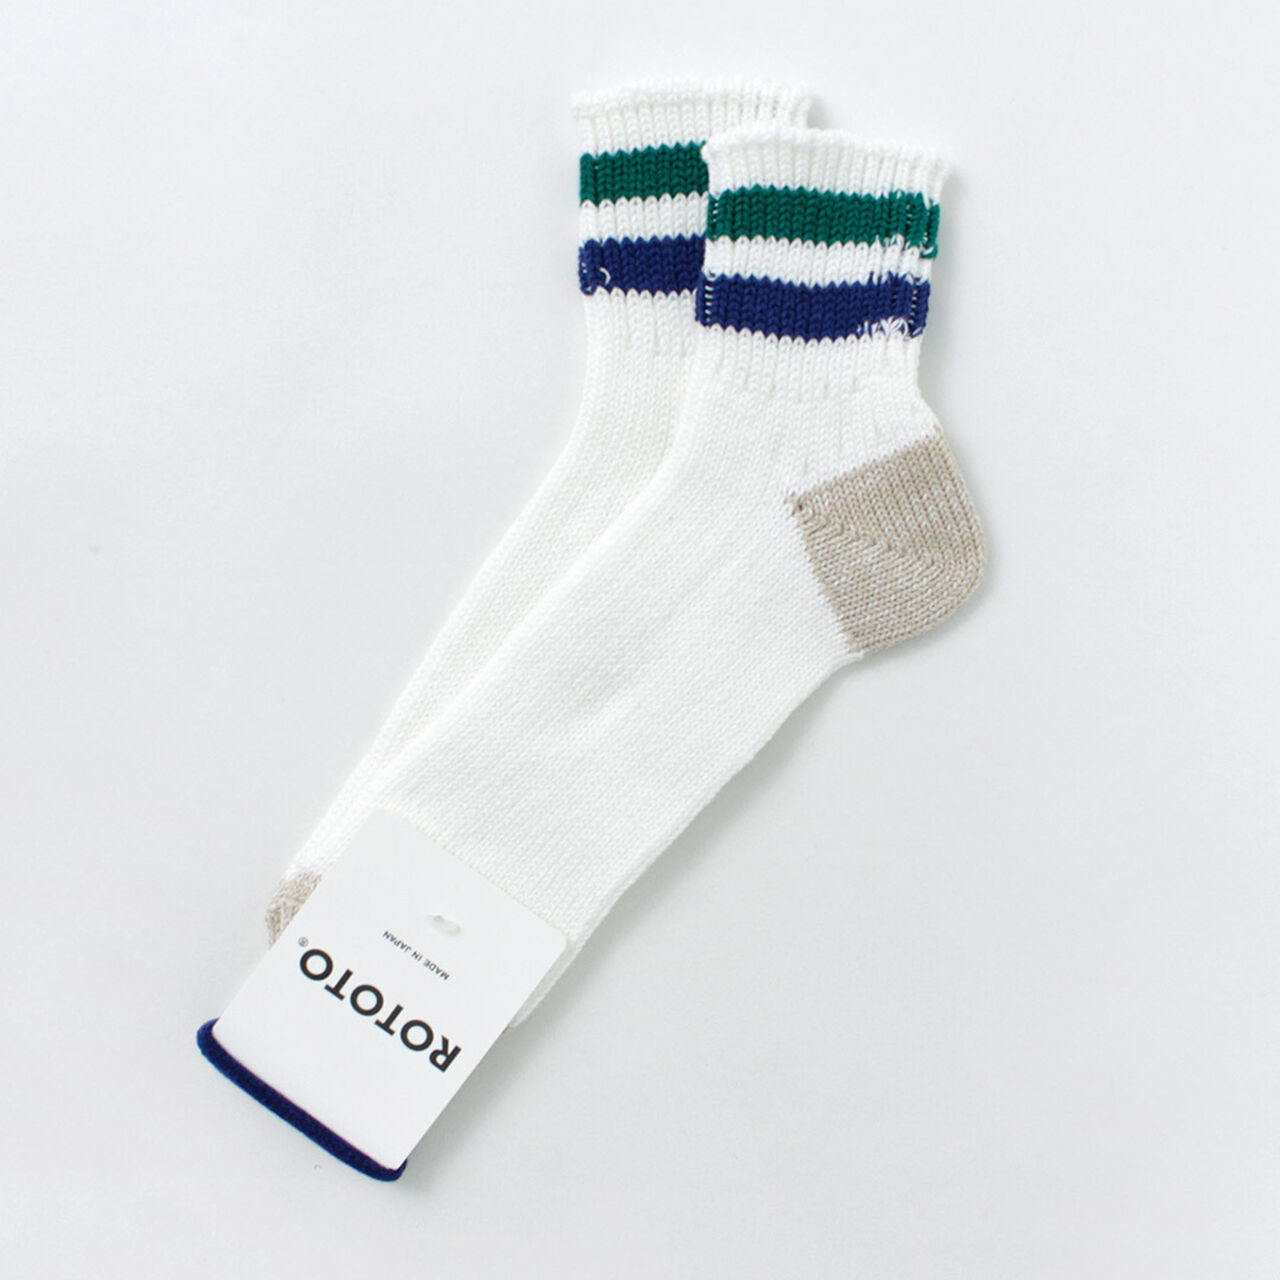 O.S. Ribbed ankle socks,Green_DarkBlue, large image number 0